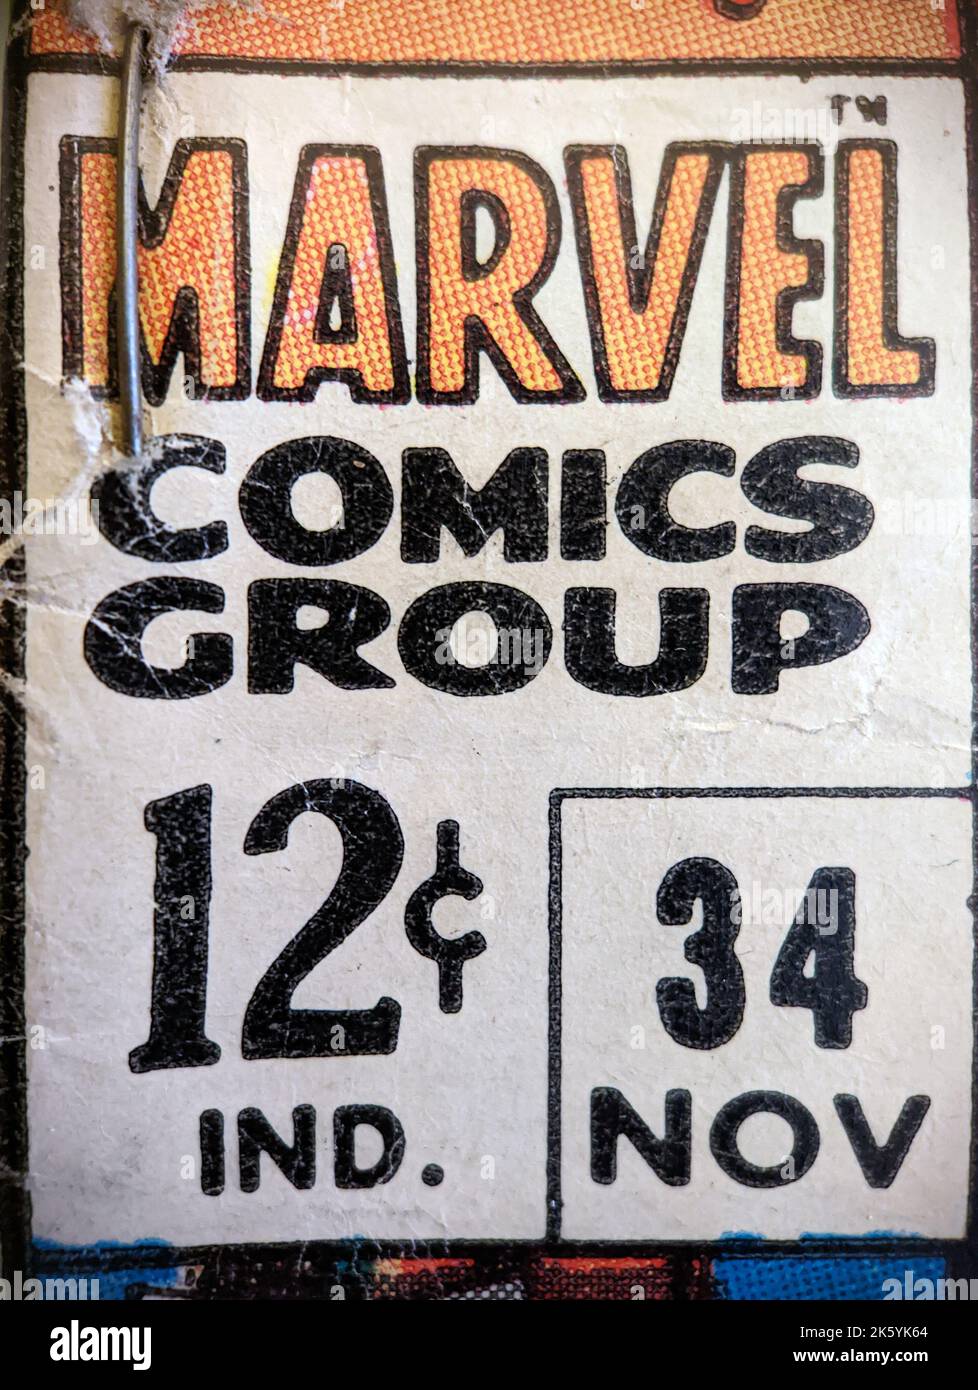 New York City, USA - Oktober 2022: Eine Nahaufnahme des alten Marvel-Comiclabels, das ursprünglich für 12 Cent verkauft wurde, ist in einem alten comi zu sehen Stockfoto